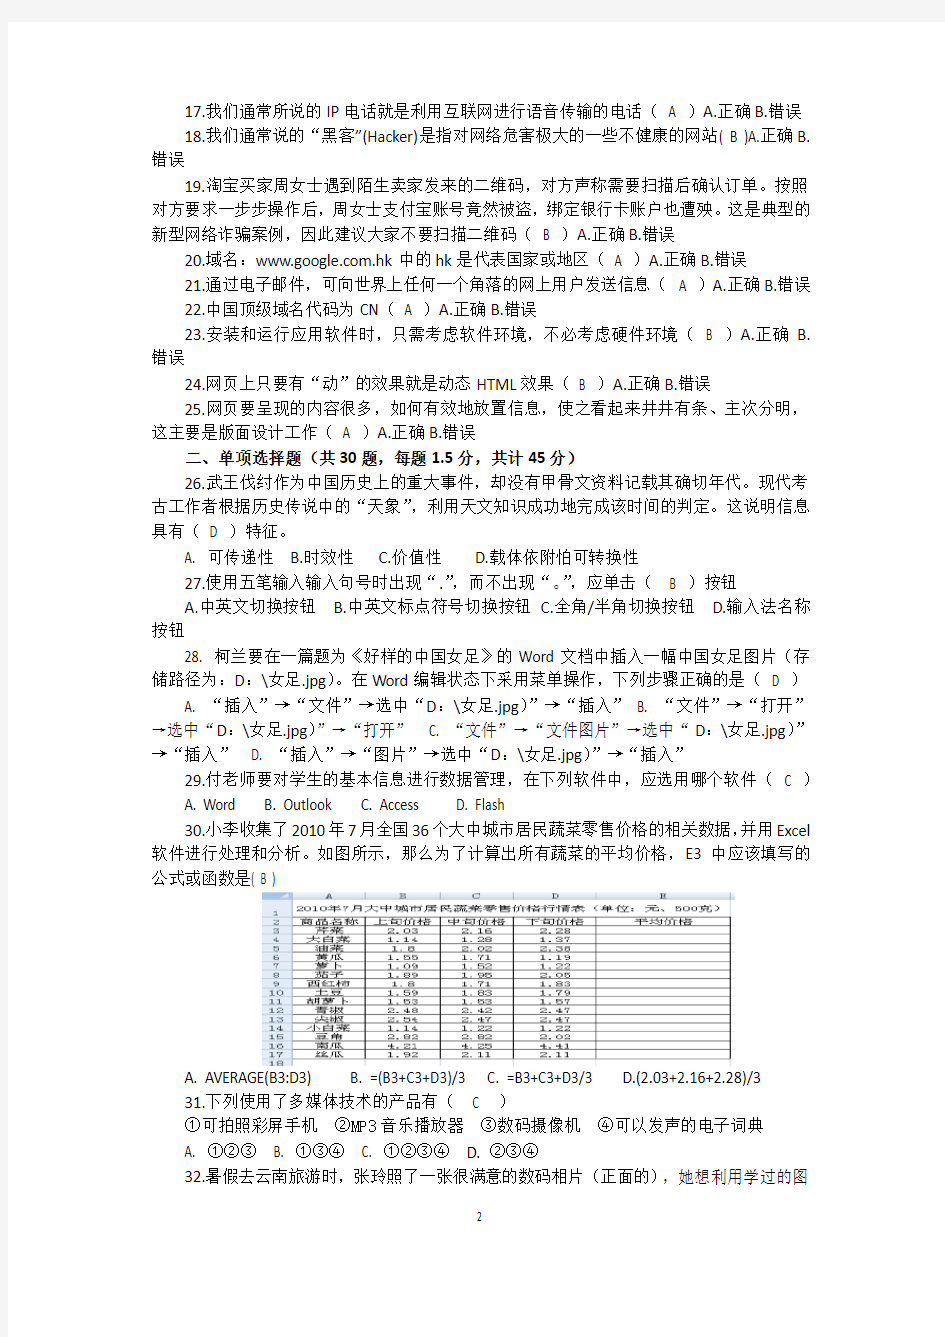 重庆市普通高中2018级学生学业水平考试信息技术测试题(一)